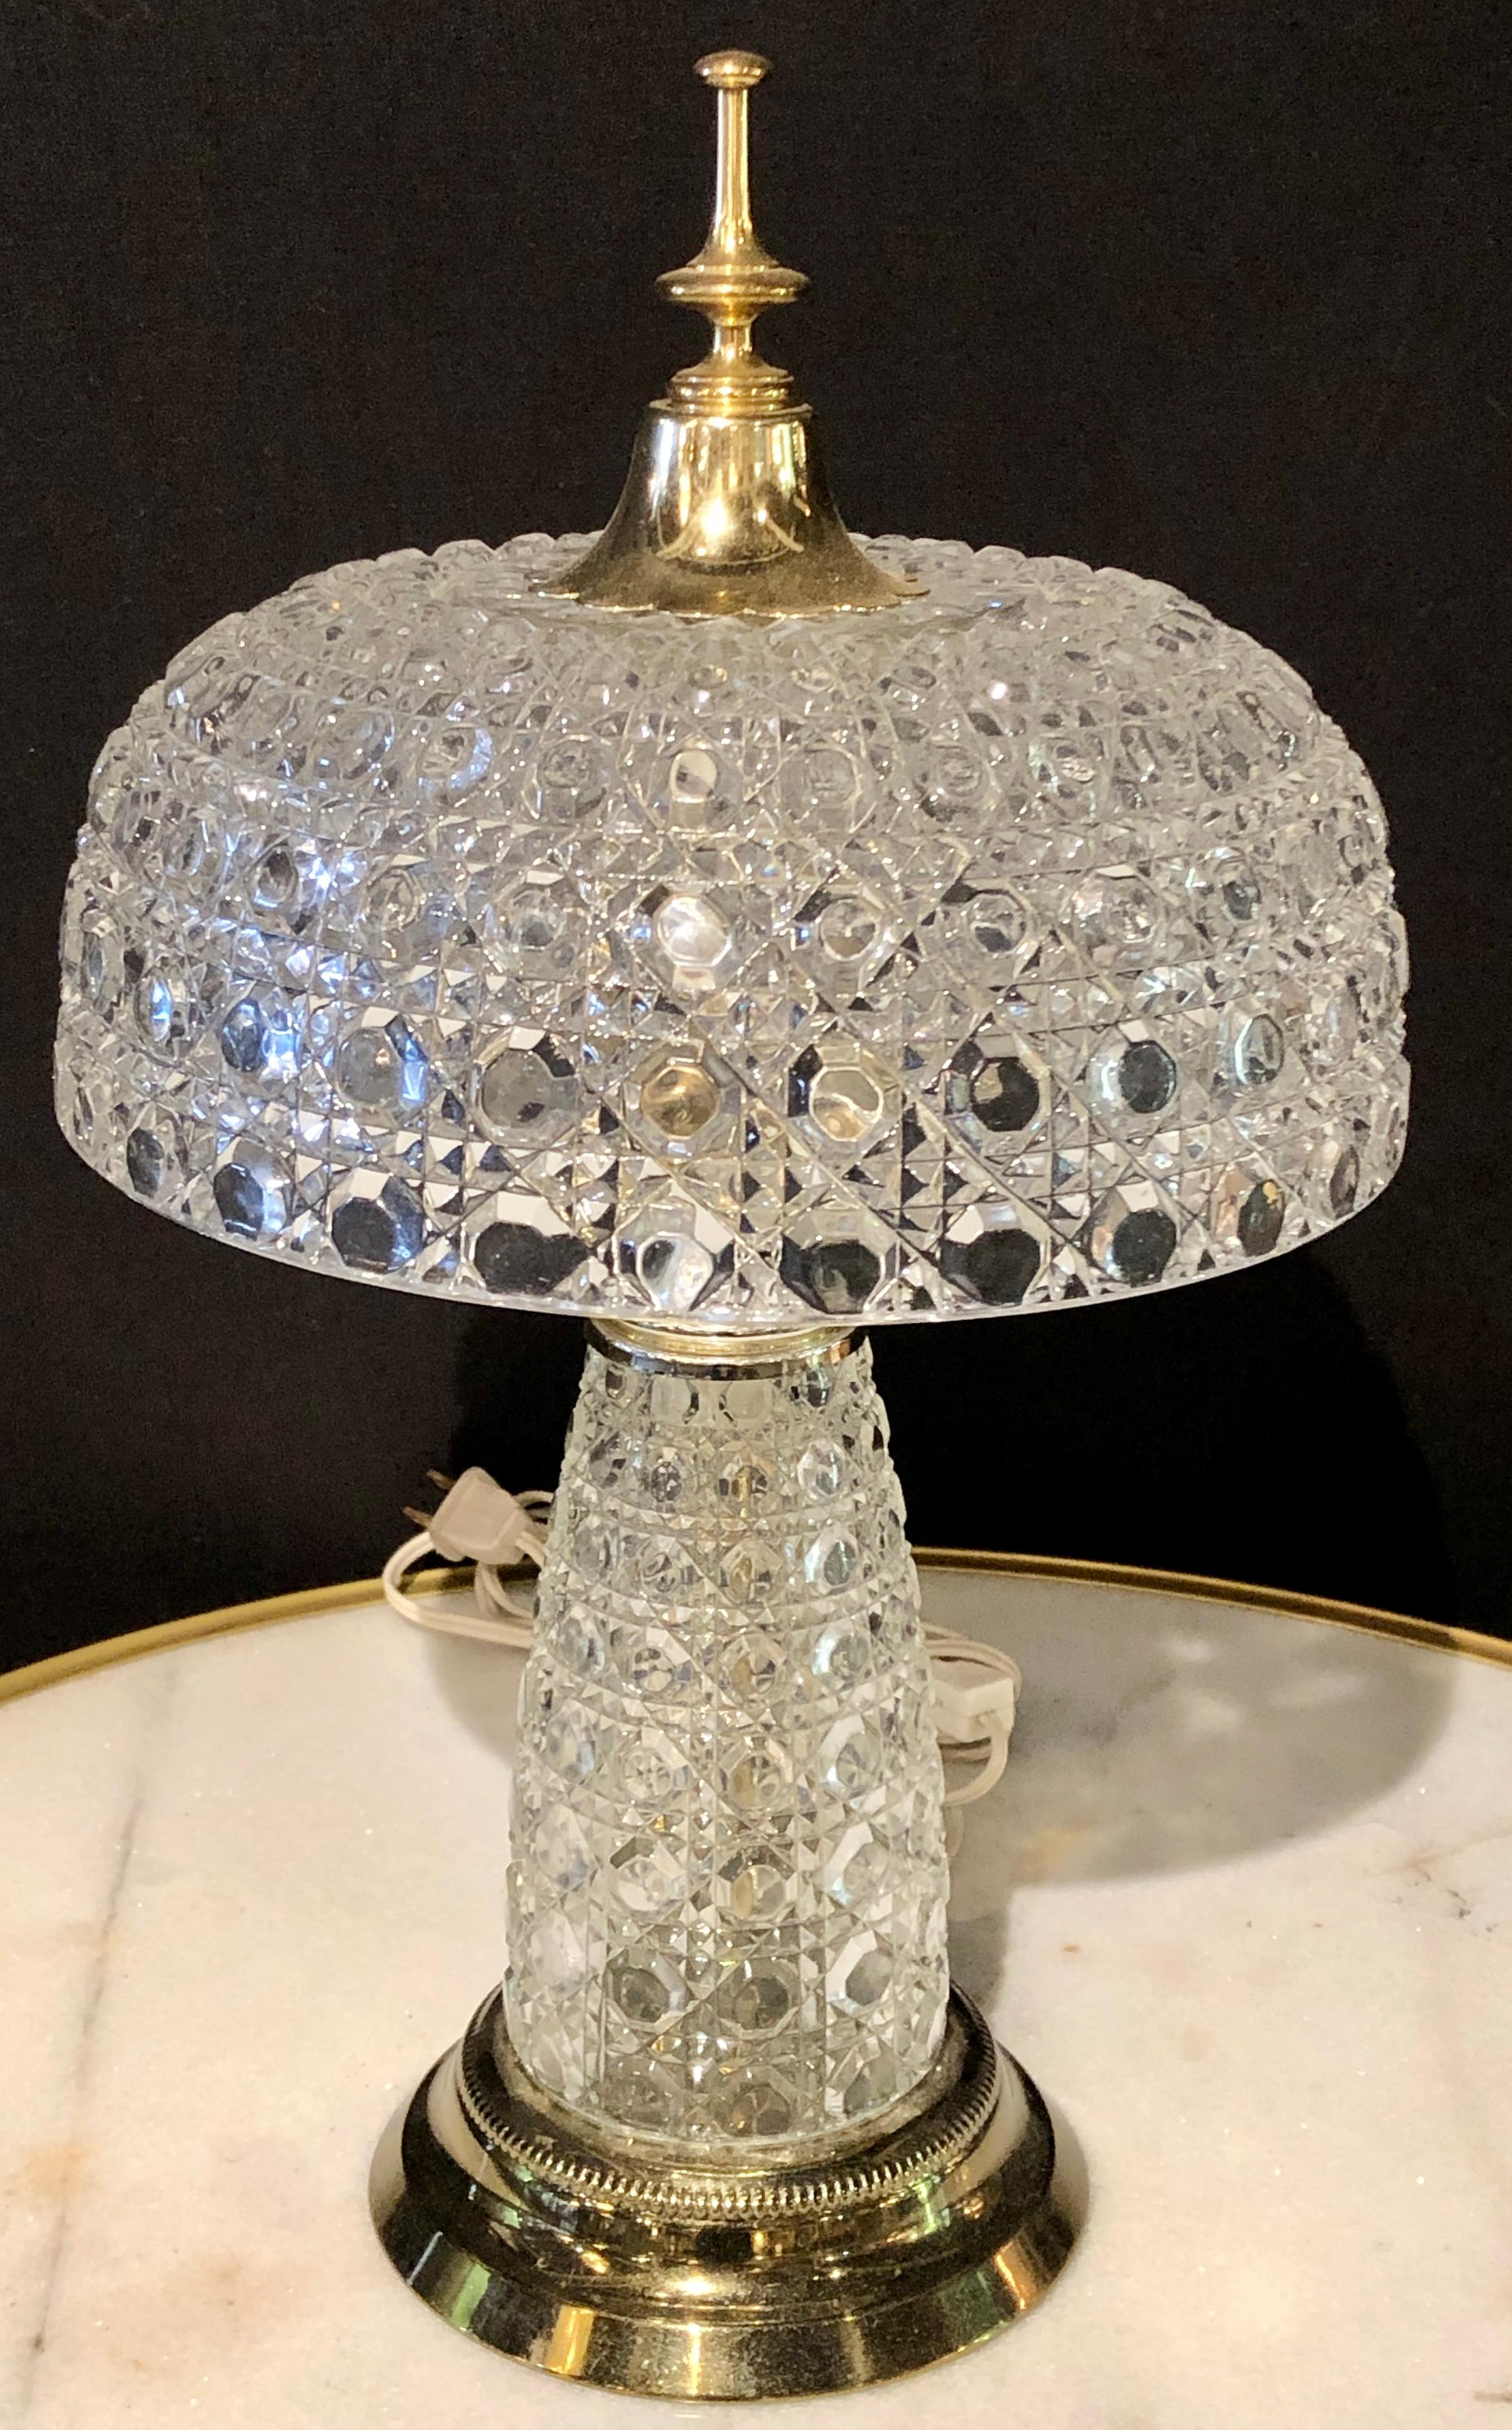 Kuppelförmige Schreibtischlampe aus geschliffenem Kristall im Art-Déco-Stil. Eine sehr süße dekorative Tisch- oder Bürolampe aus schwerem geschliffenem Kristall.
SX.